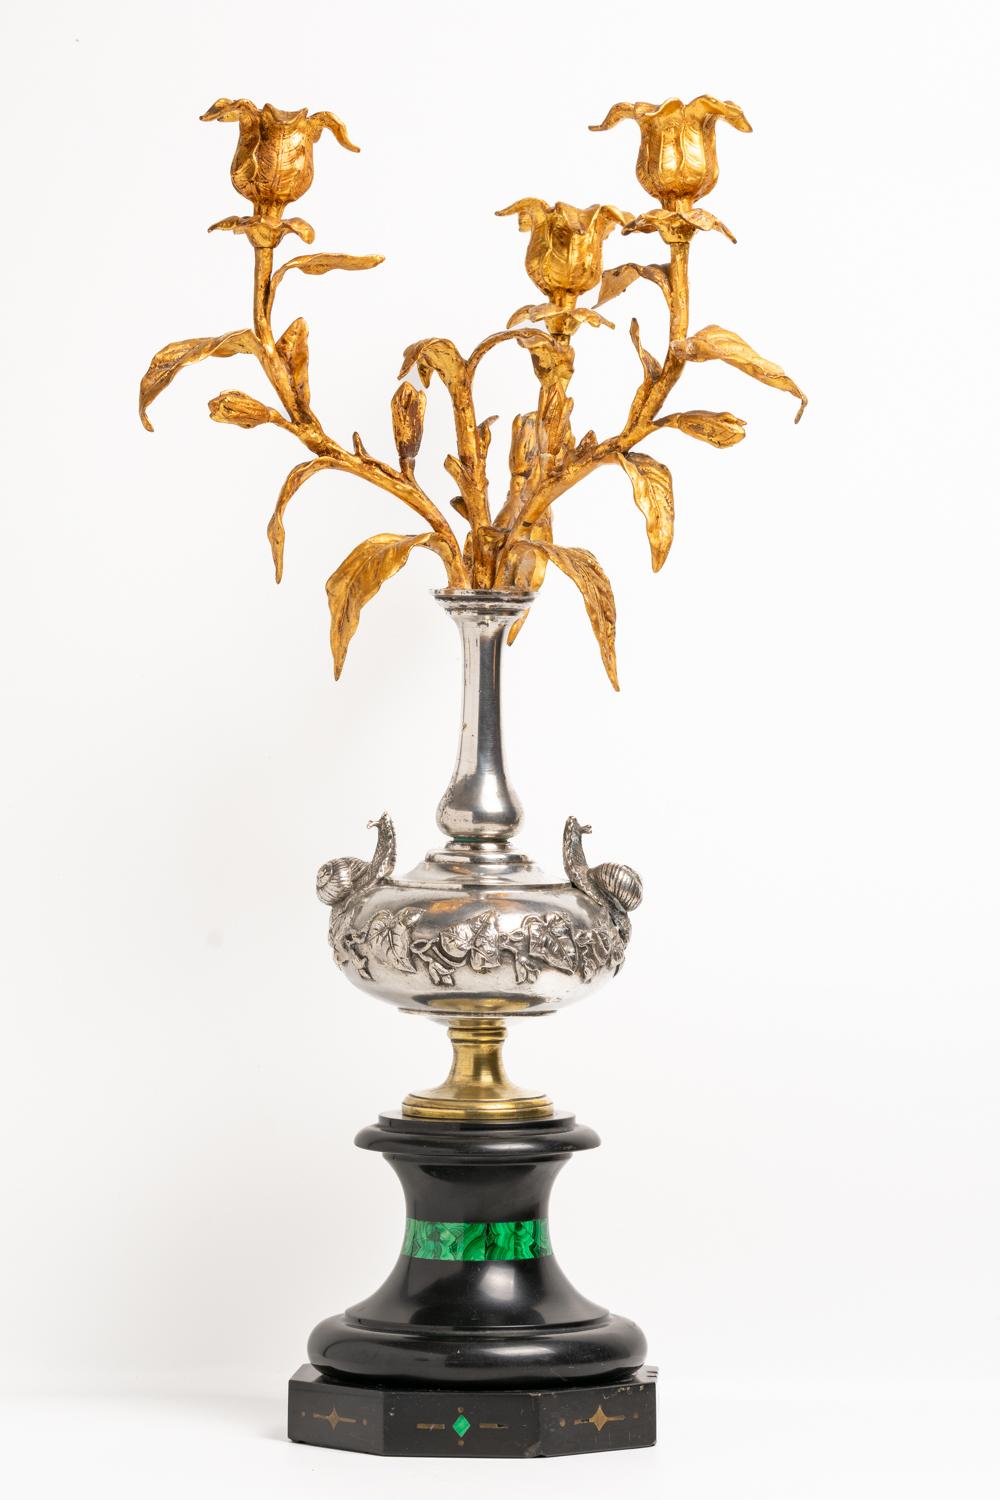 Dieser exquisite französische Kandelaber aus dem frühen 19. Jahrhundert ist ein meisterhaftes Werk der Kunst. Das Stück ist in schwarzem Marmor und vergoldeter Bronze gegossen. Das außergewöhnliche versilberte Design ist mit einem Schneckenpaar und